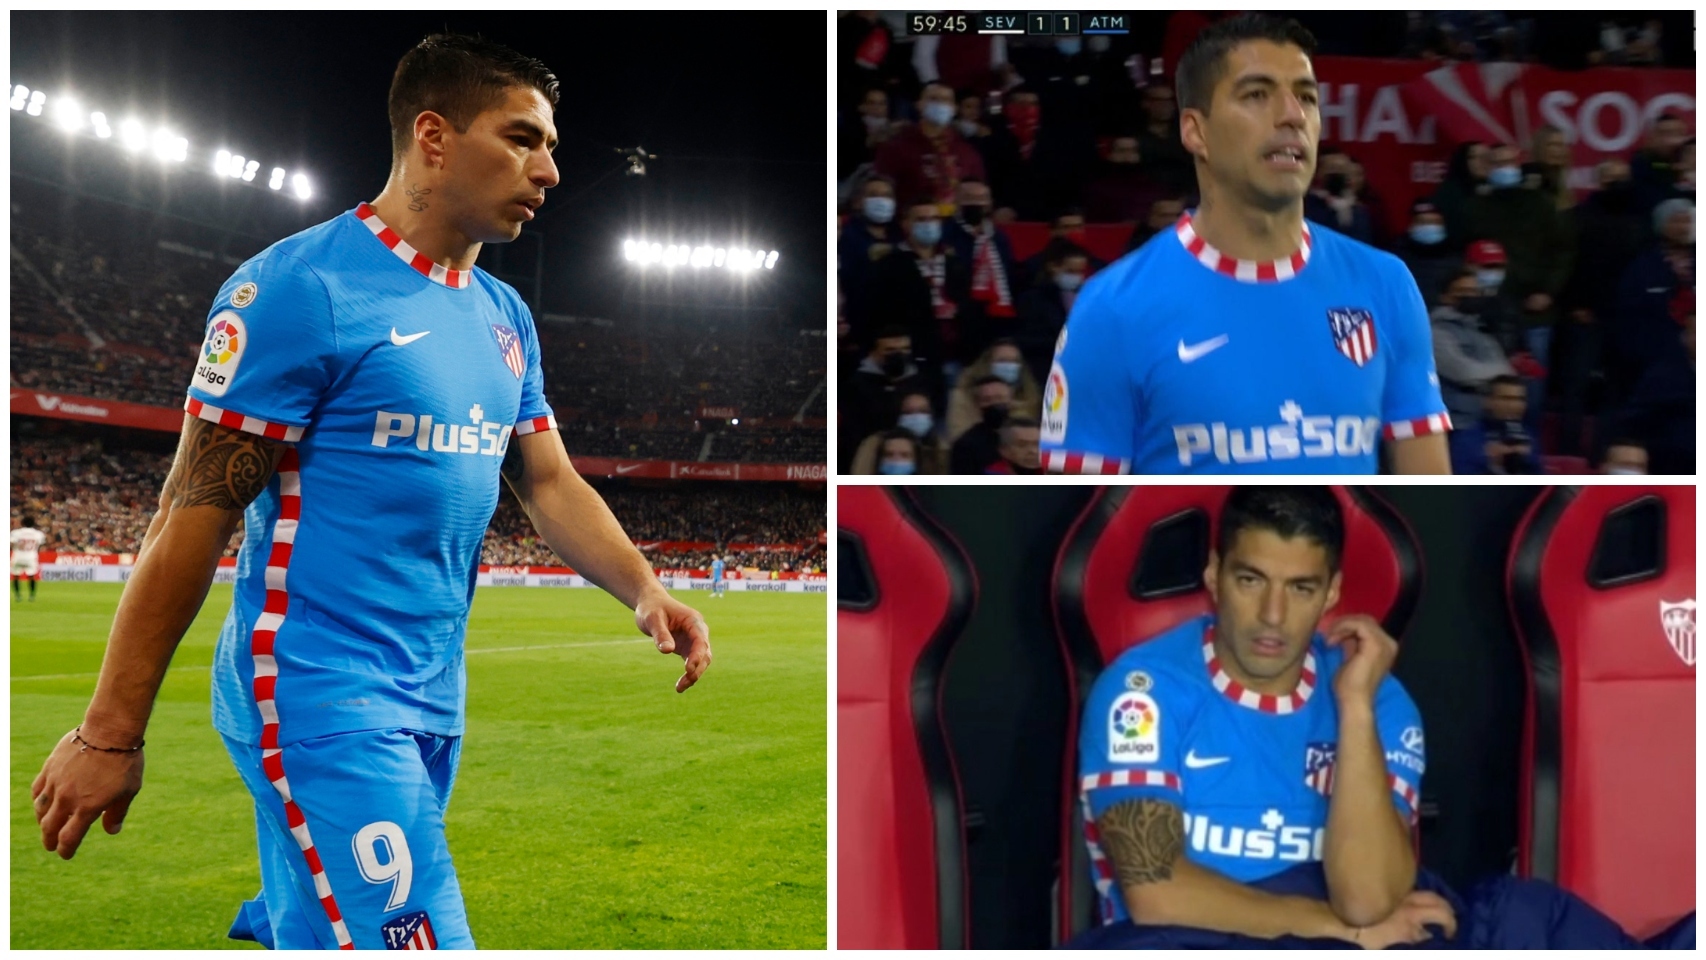 El enfado de Luis Suárez en el Sevilla - Atlético de Madrid